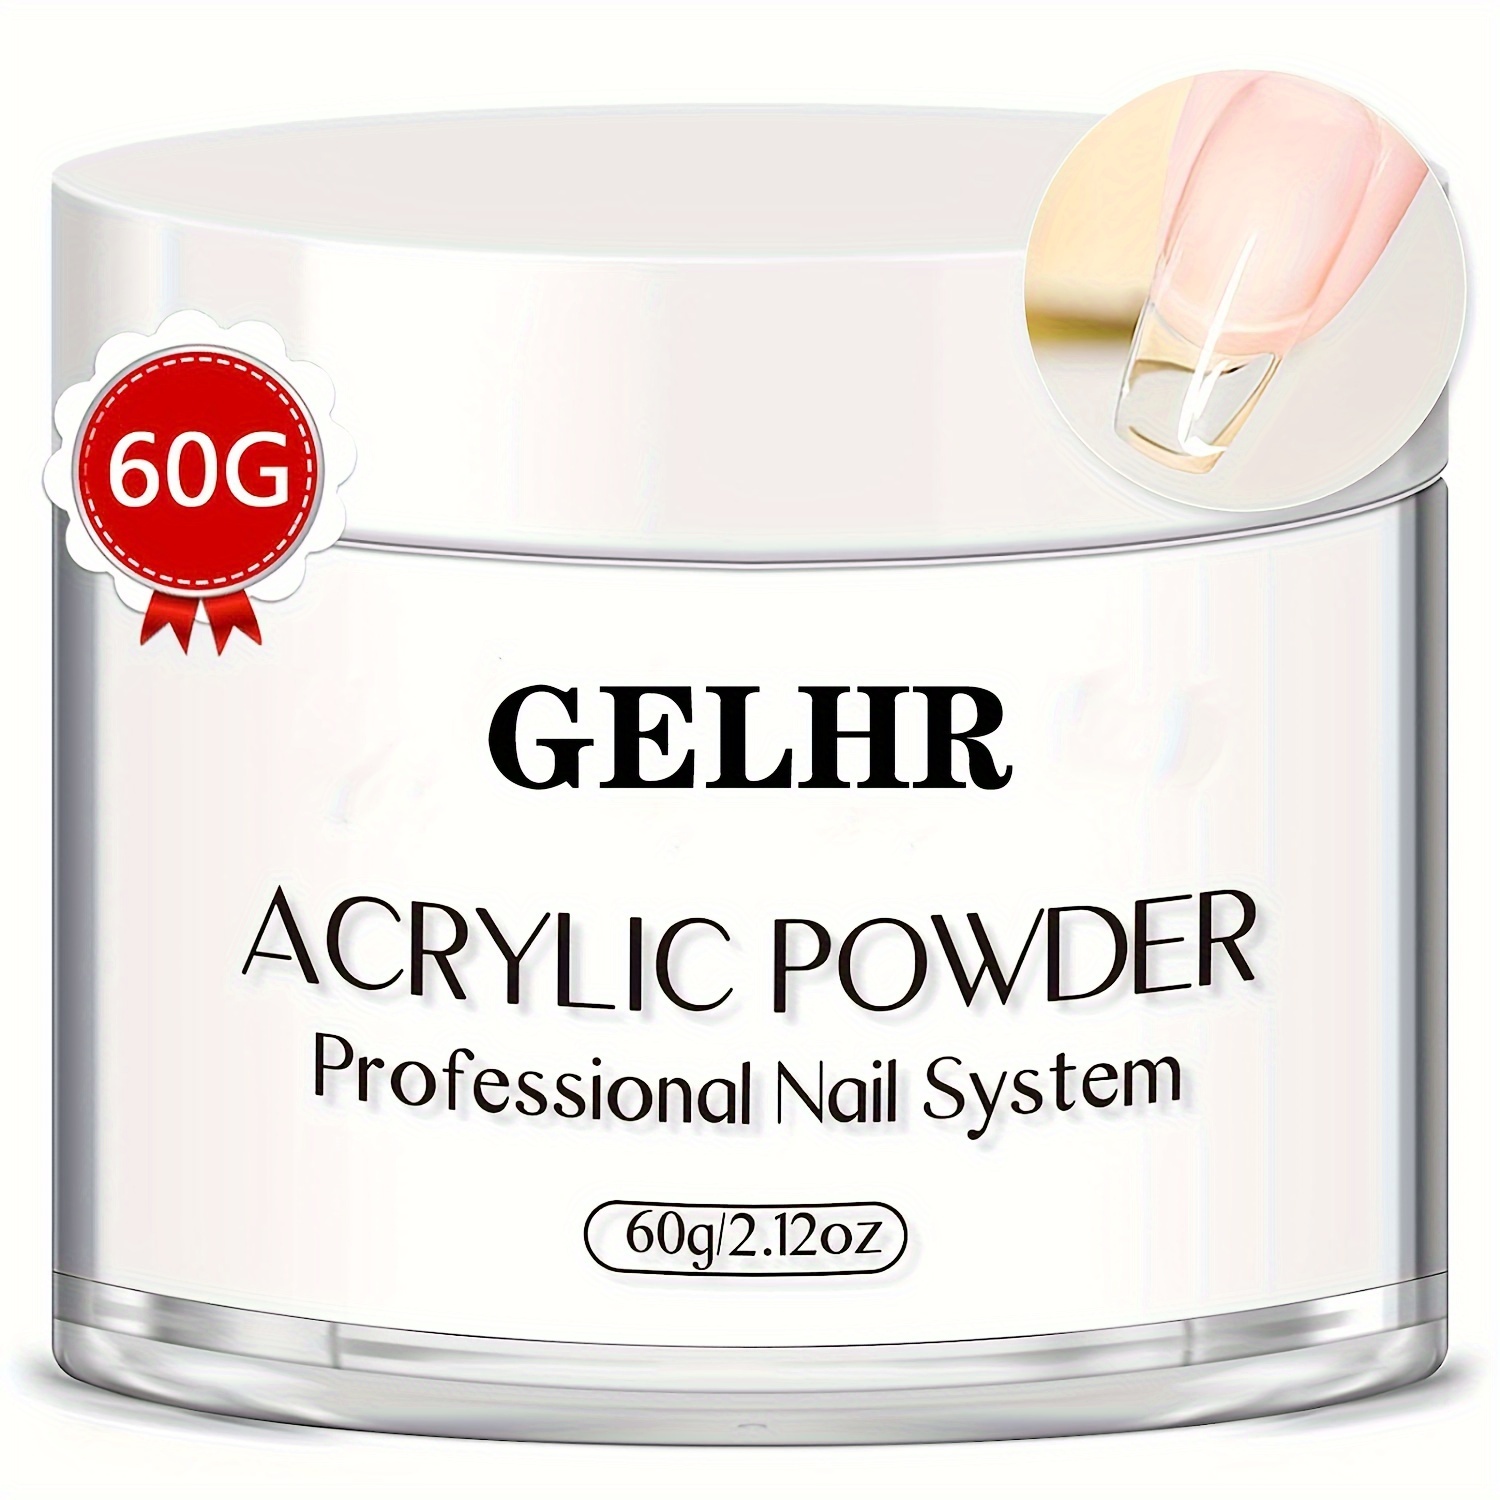 60g Black Acrylic Nail Powder Liquid Crystal Powder For Nail